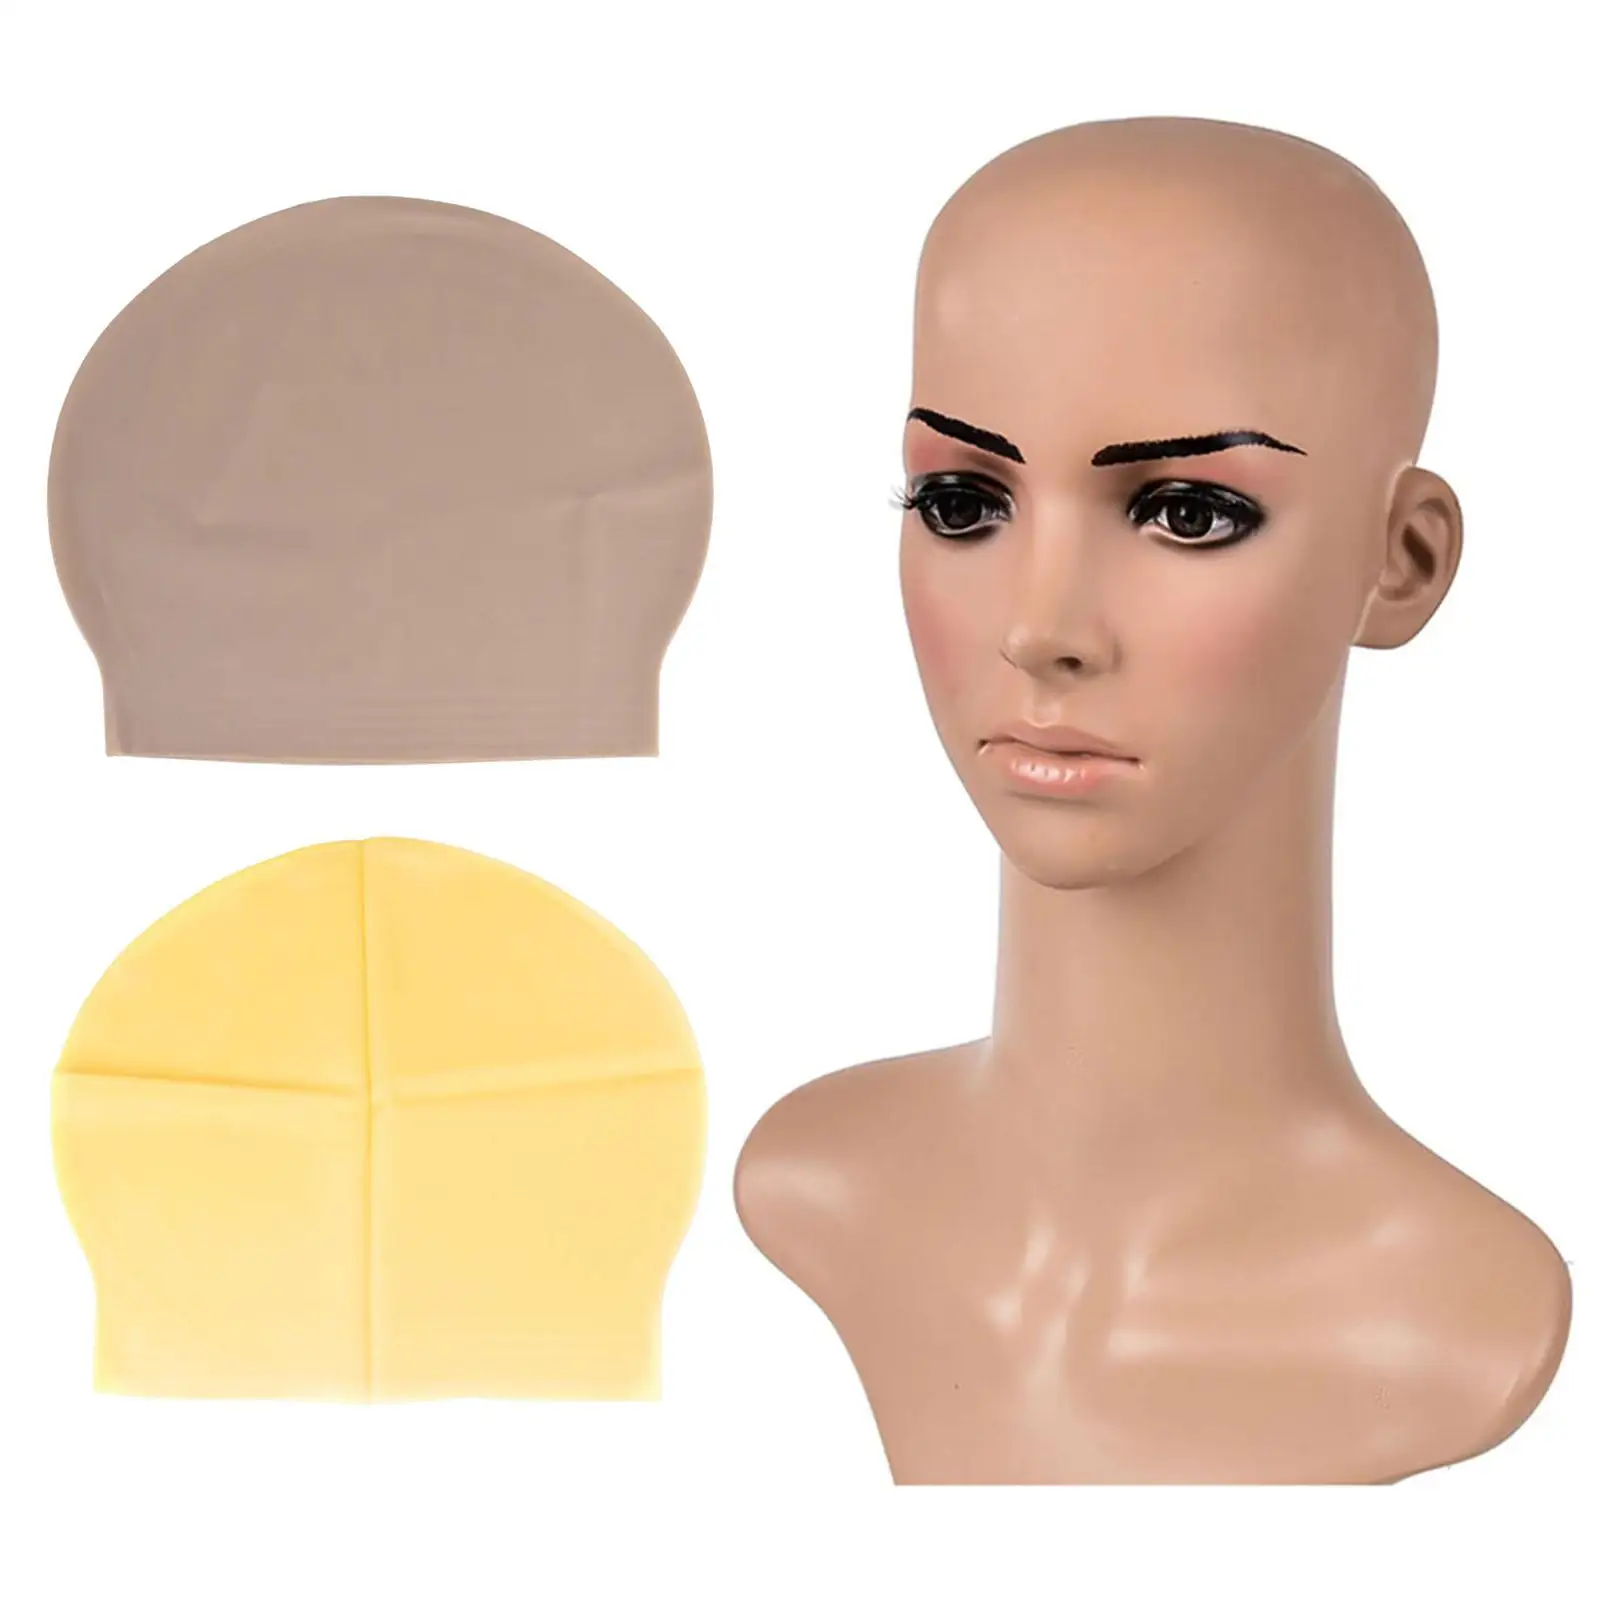 Skinhead Cap Scalp Cover Bald Cap Costume for Movie Prop Men Ladies